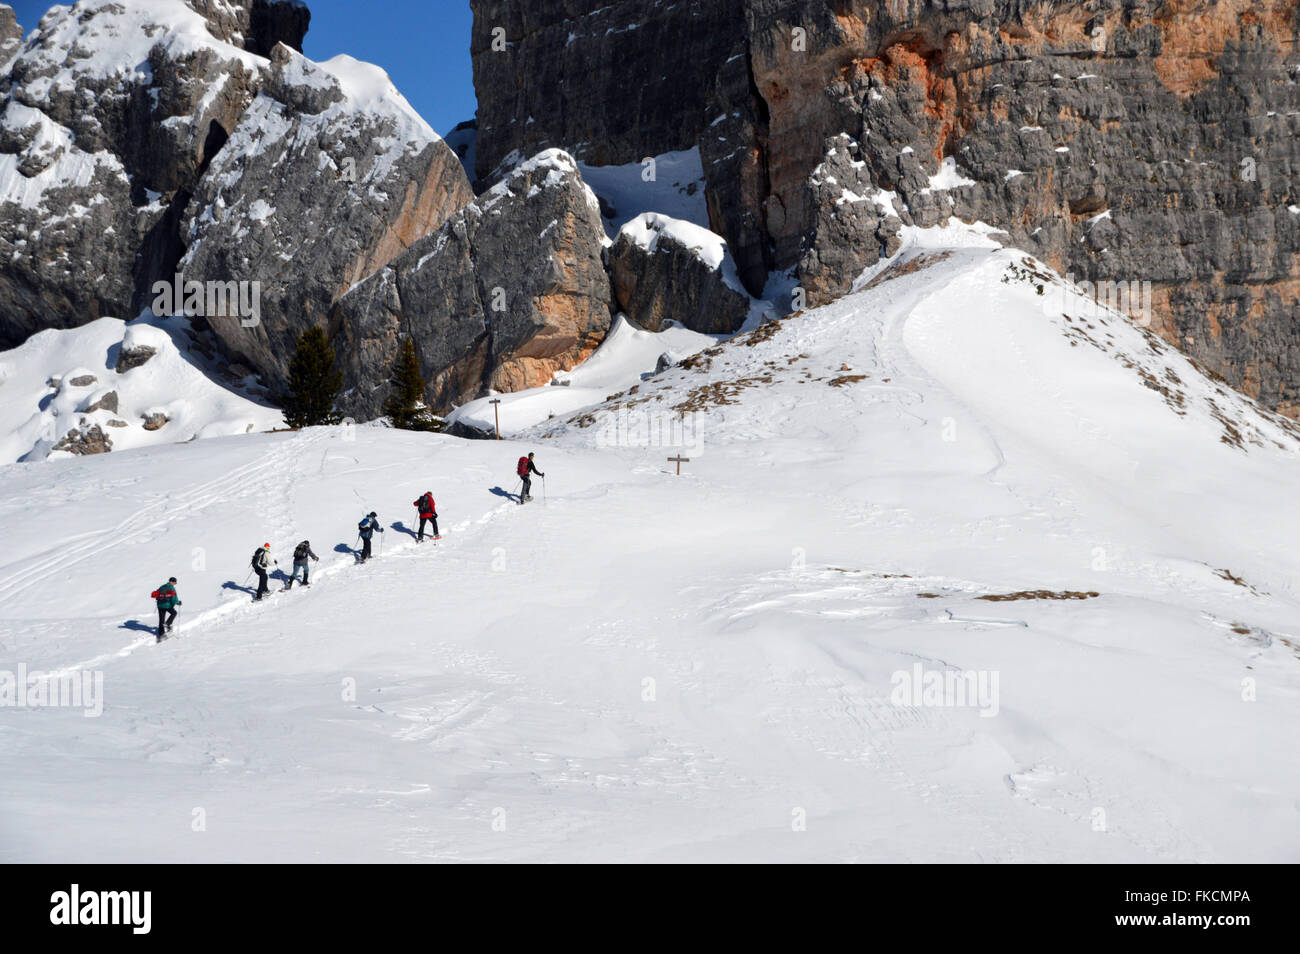 Groupe de personnes la raquette à neige dans les Cinque Torri (dans la zone des 5 tours de Falzarego) dans les Dolomites italiennes Banque D'Images